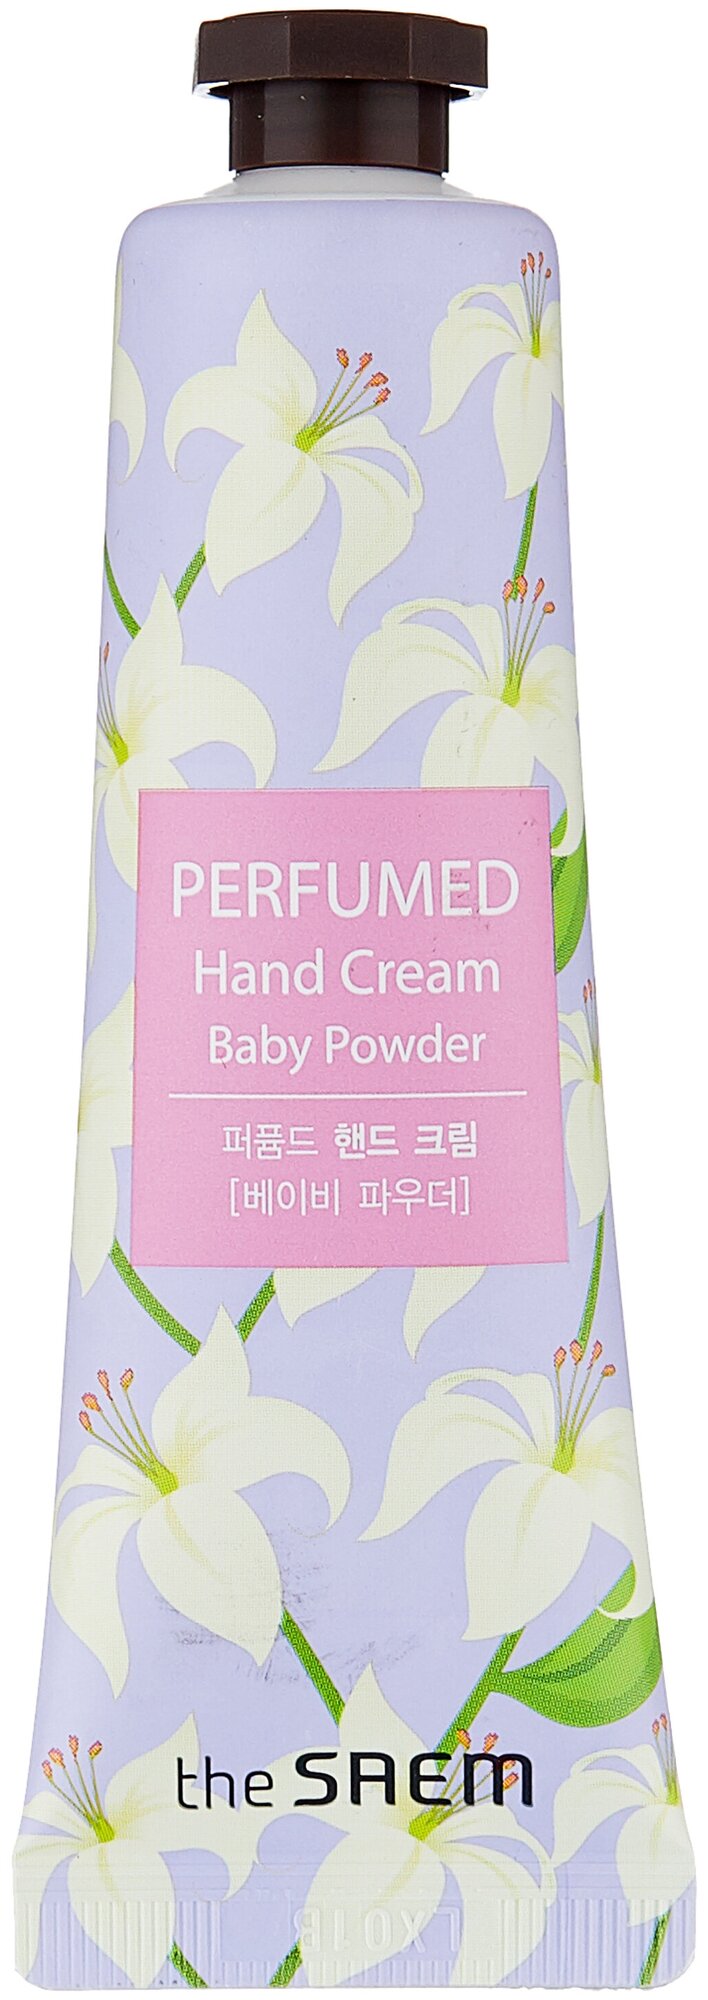 Парфюмированый крем для рук The Saem Perfumed Hand Cream Baby Powder, 30 мл.